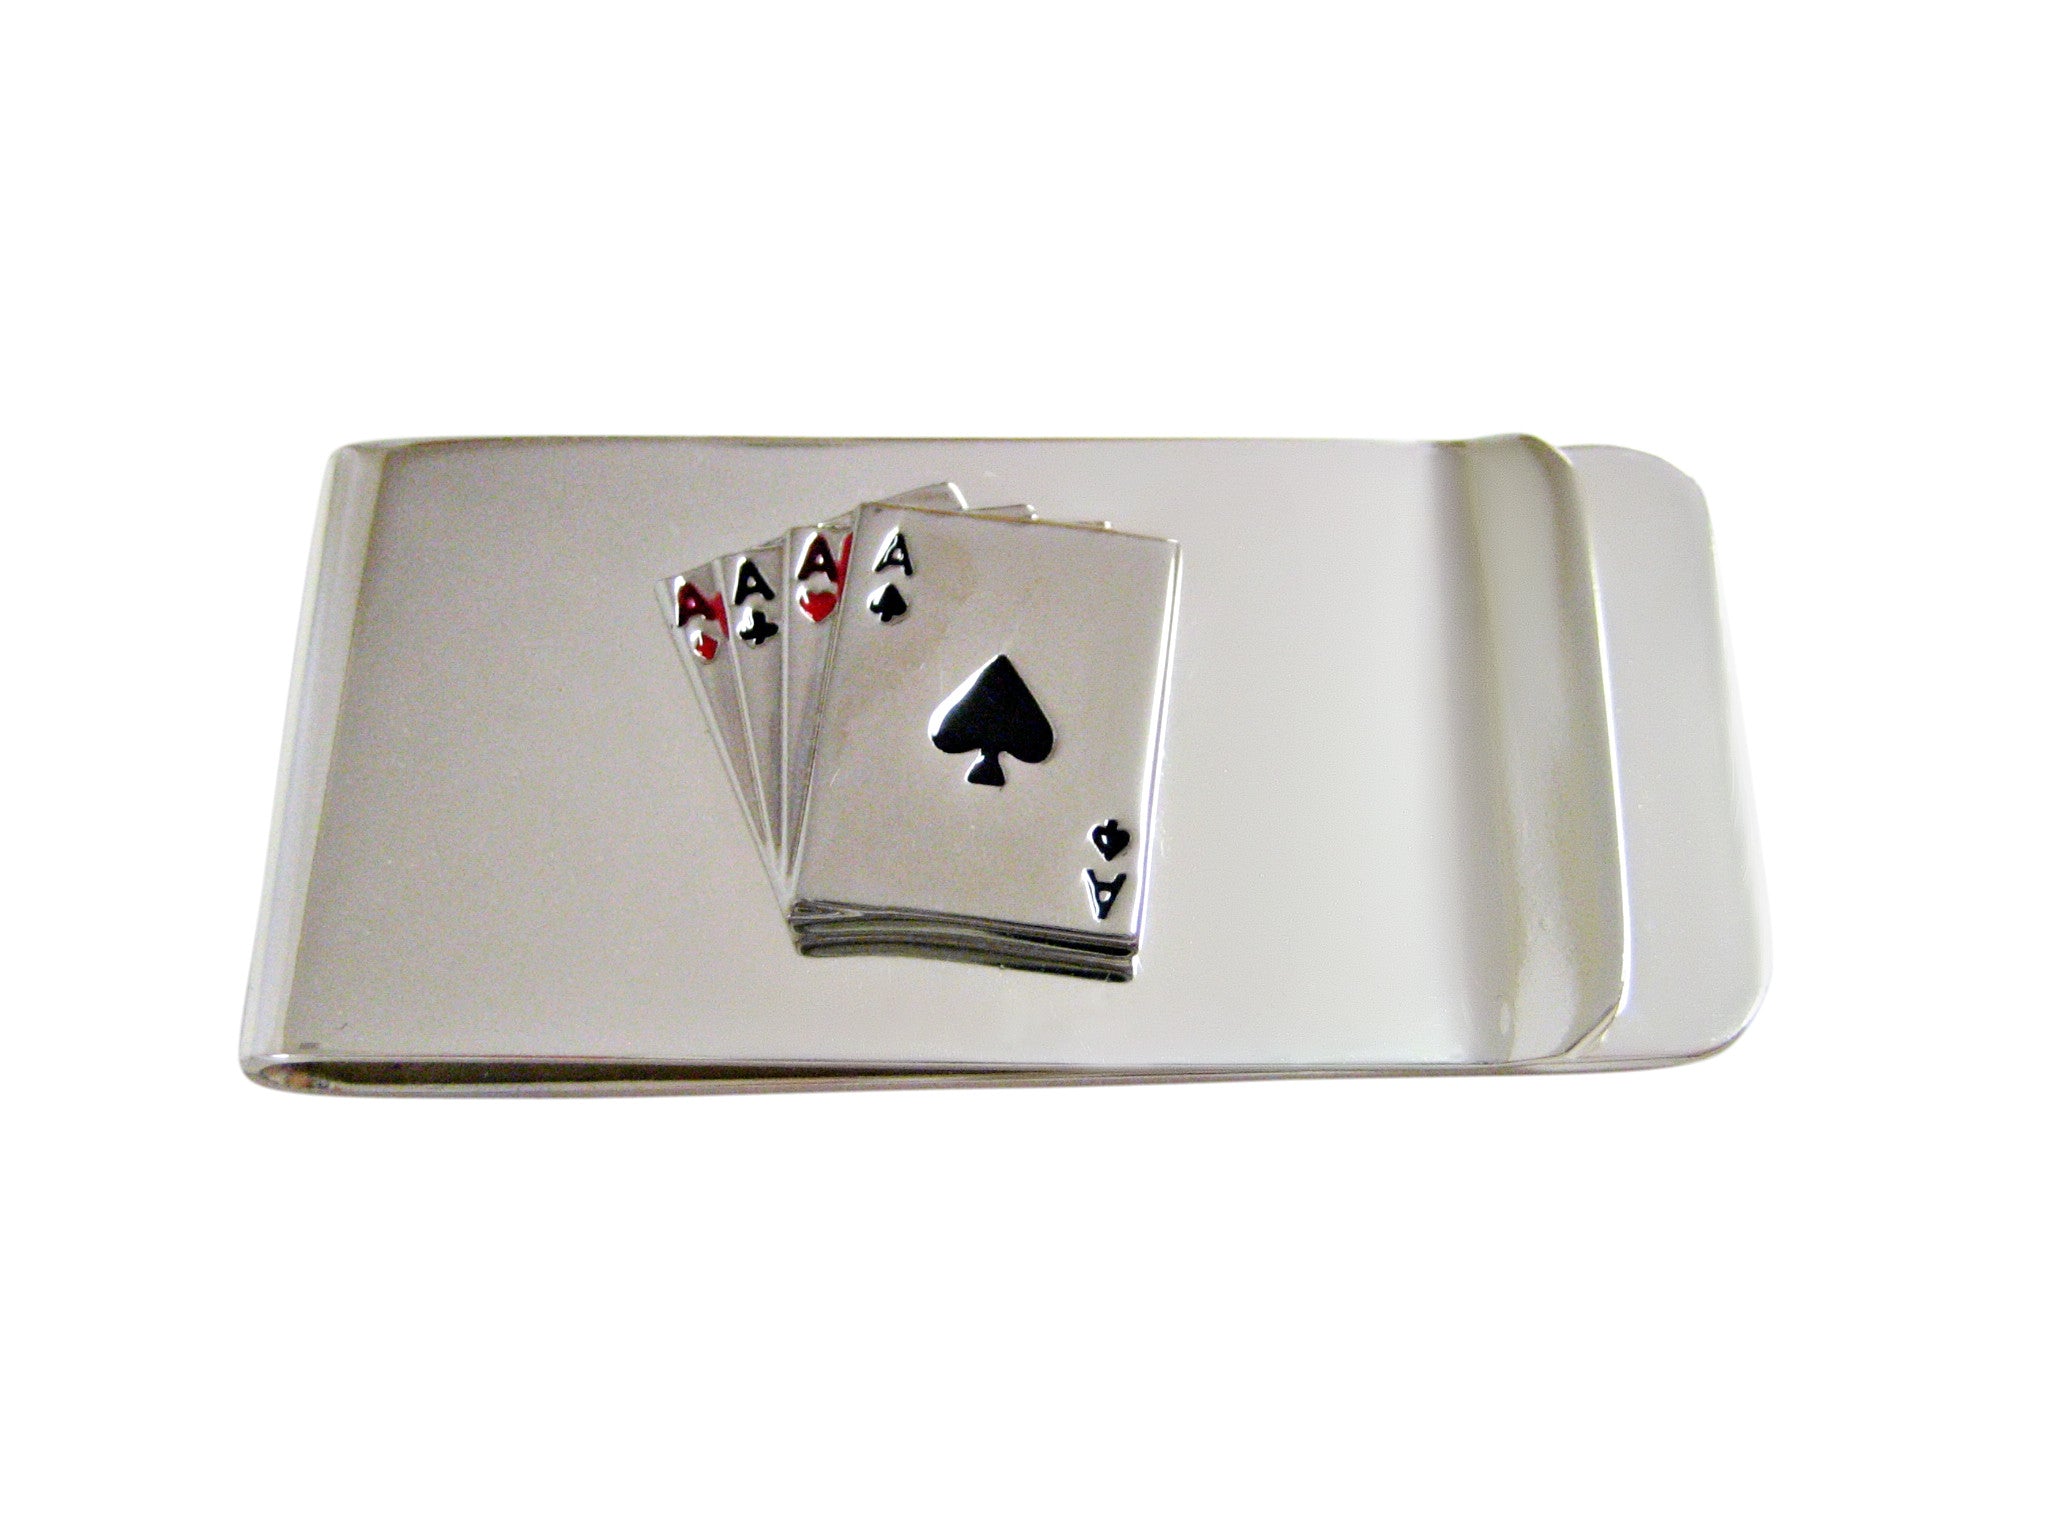 Four Aces Gambling Money Clip